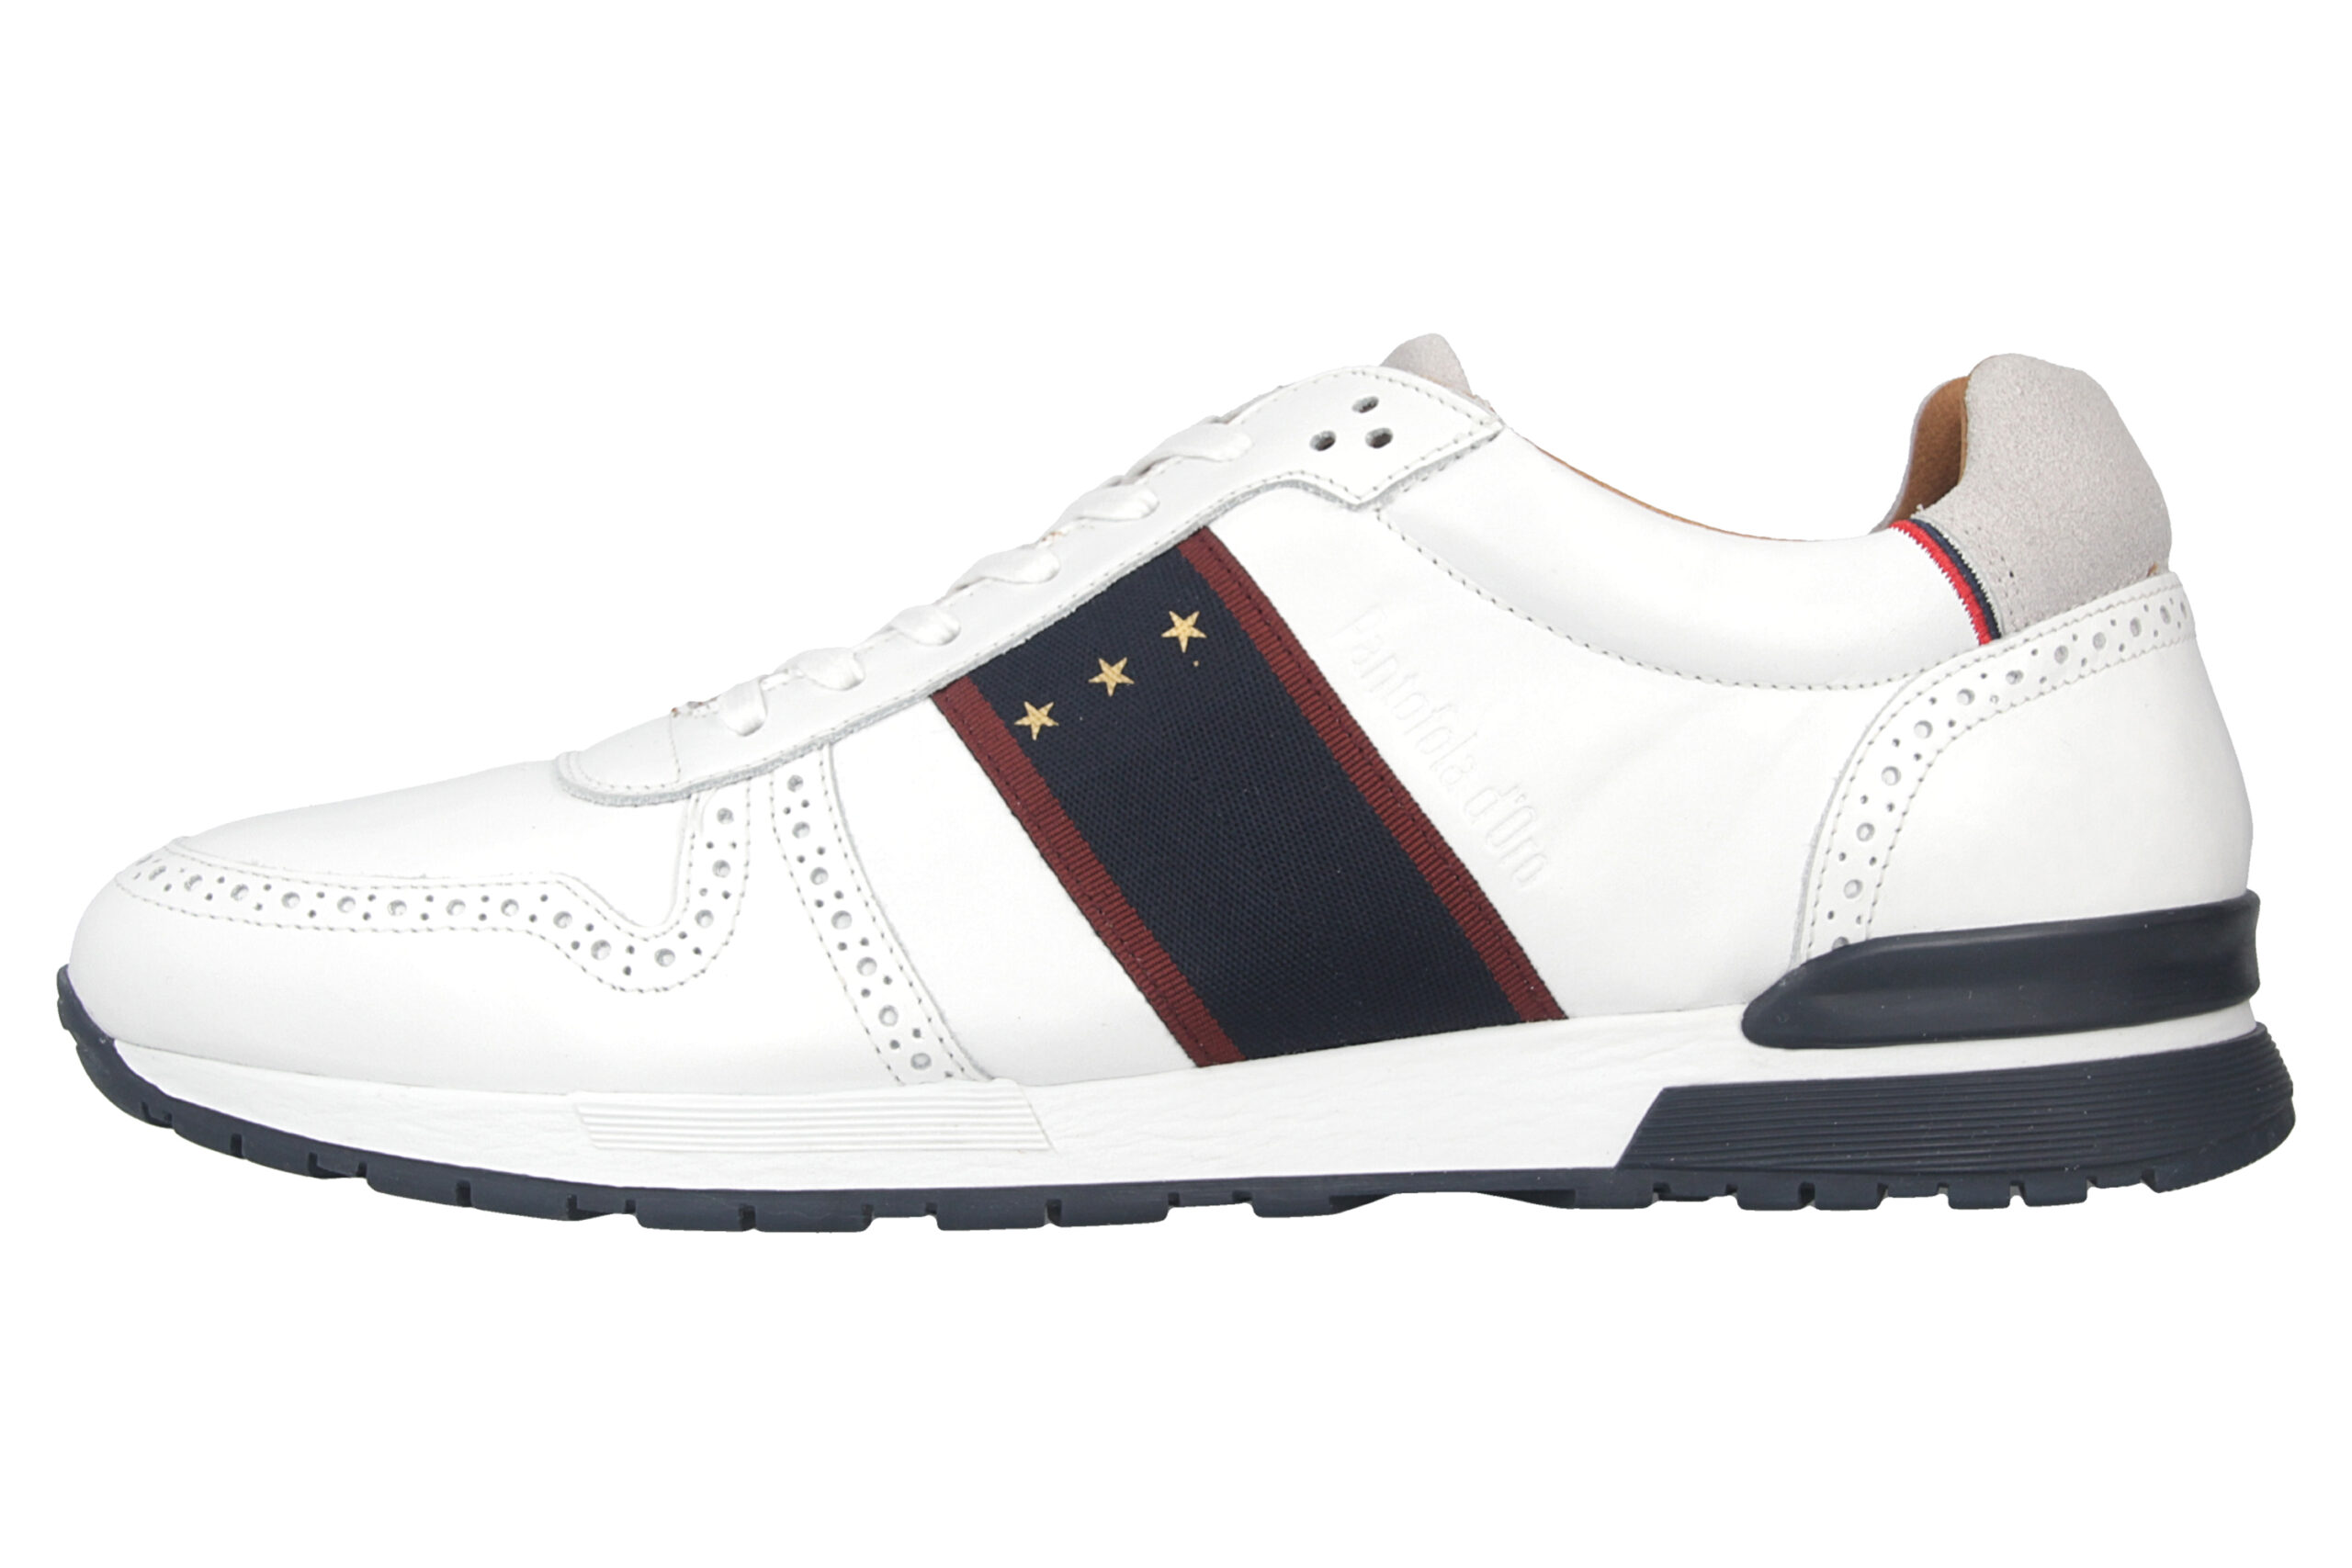 Pantofola d'Oro Sangano Uomo Low Sneaker in Übergrößen Weiß 10201015.1FG/10201073.1FG große Herrenschuhe